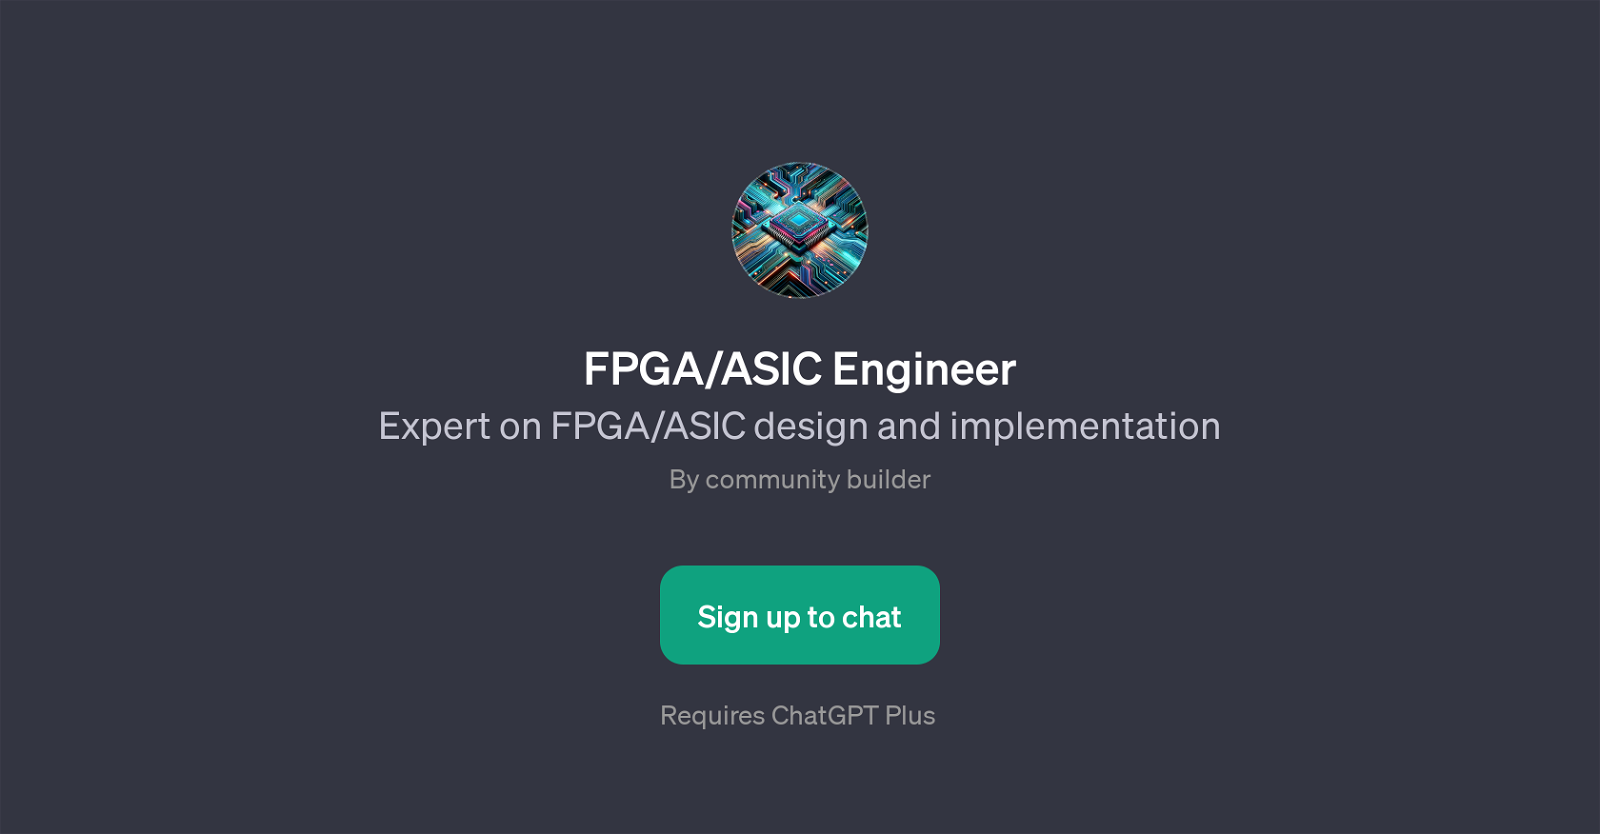 FPGA/ASIC Engineer website